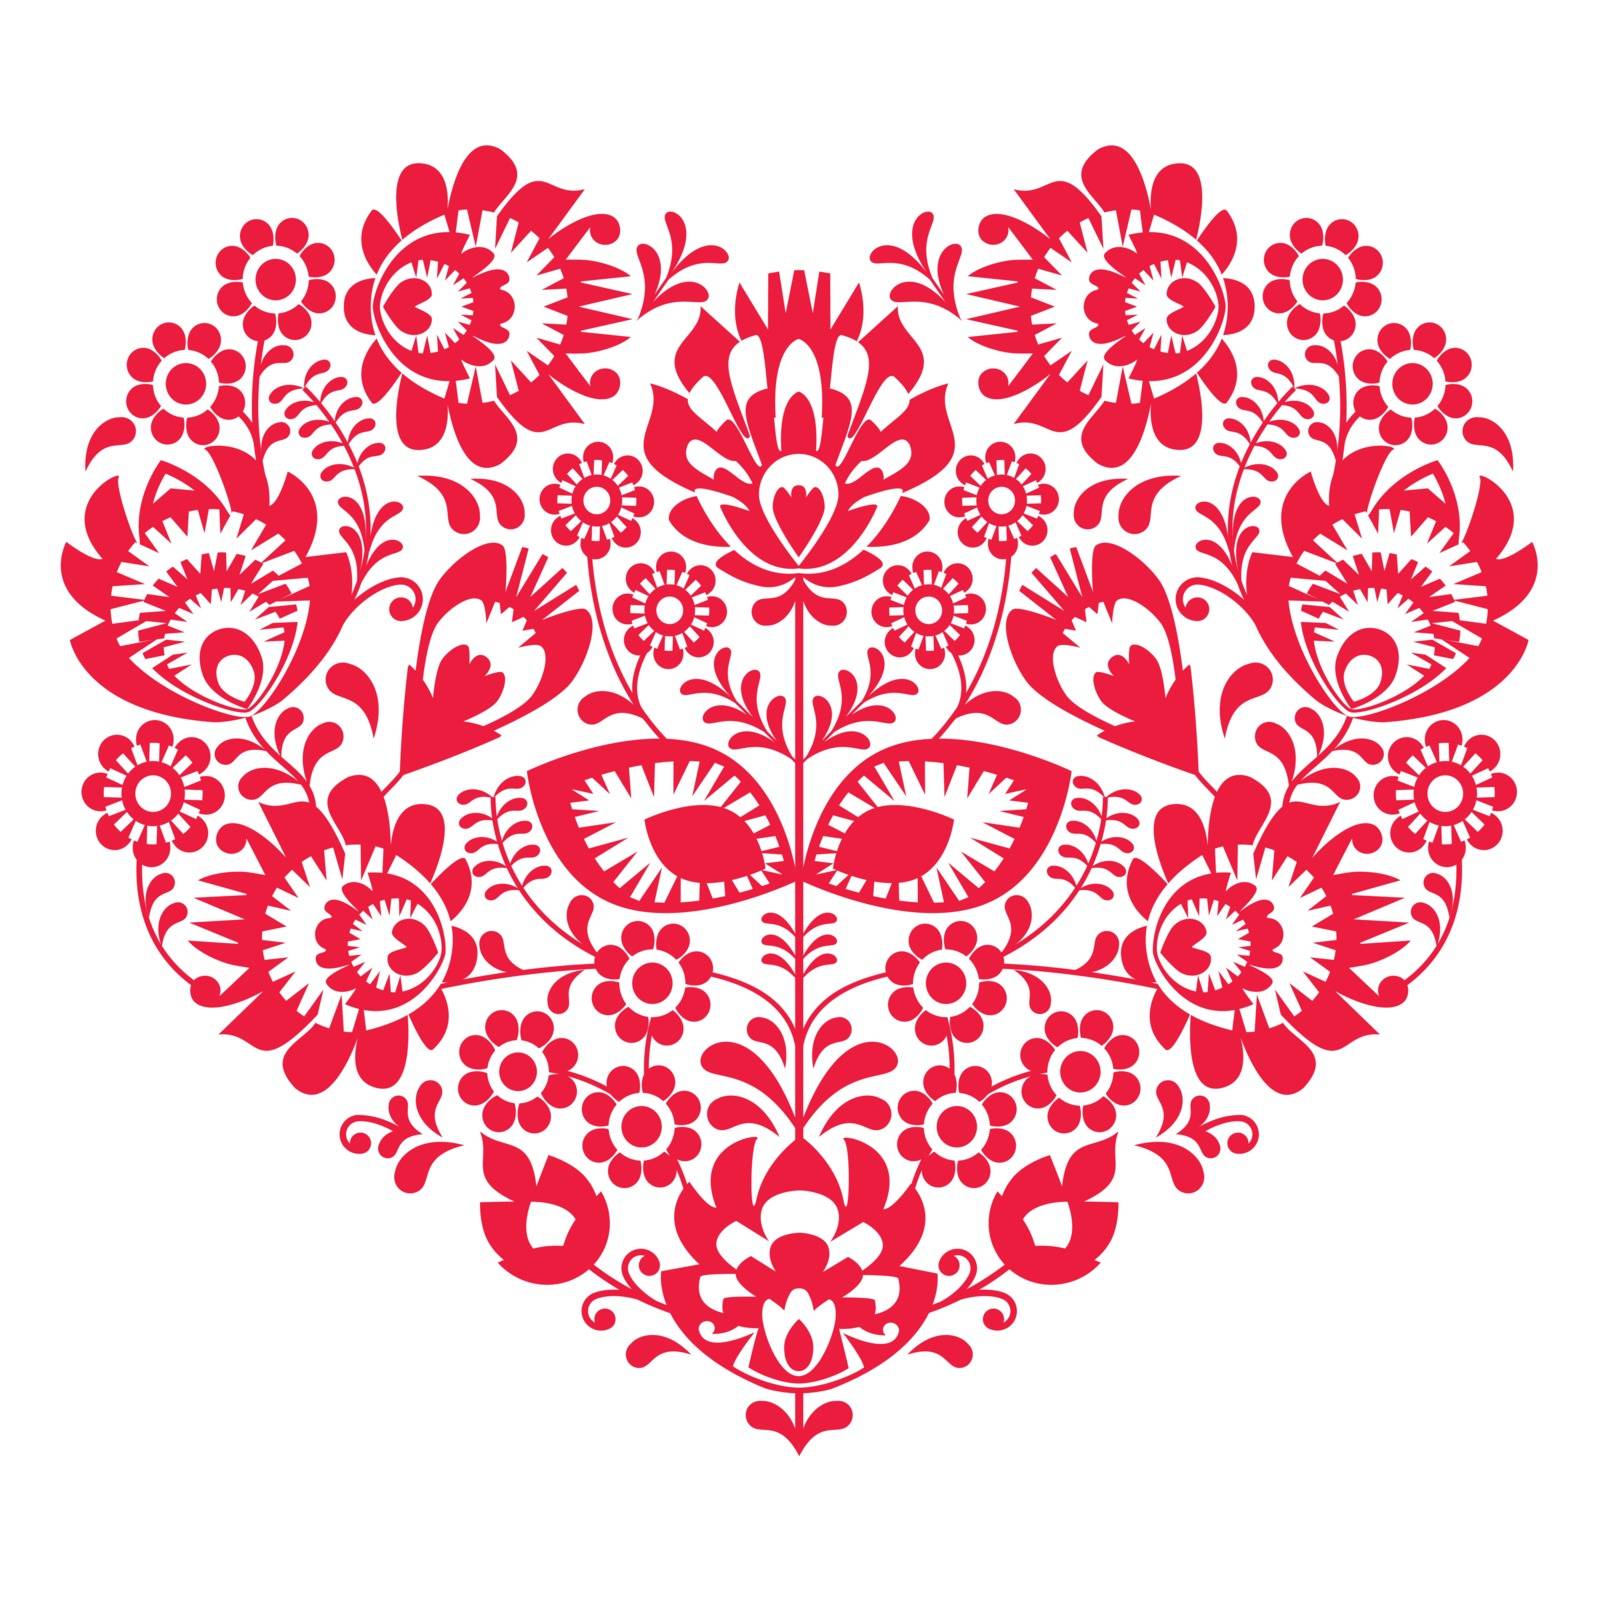 Valentines Day folk art red heart - Polish pattern Wzory Lowickie, Wycinanki by RedKoala